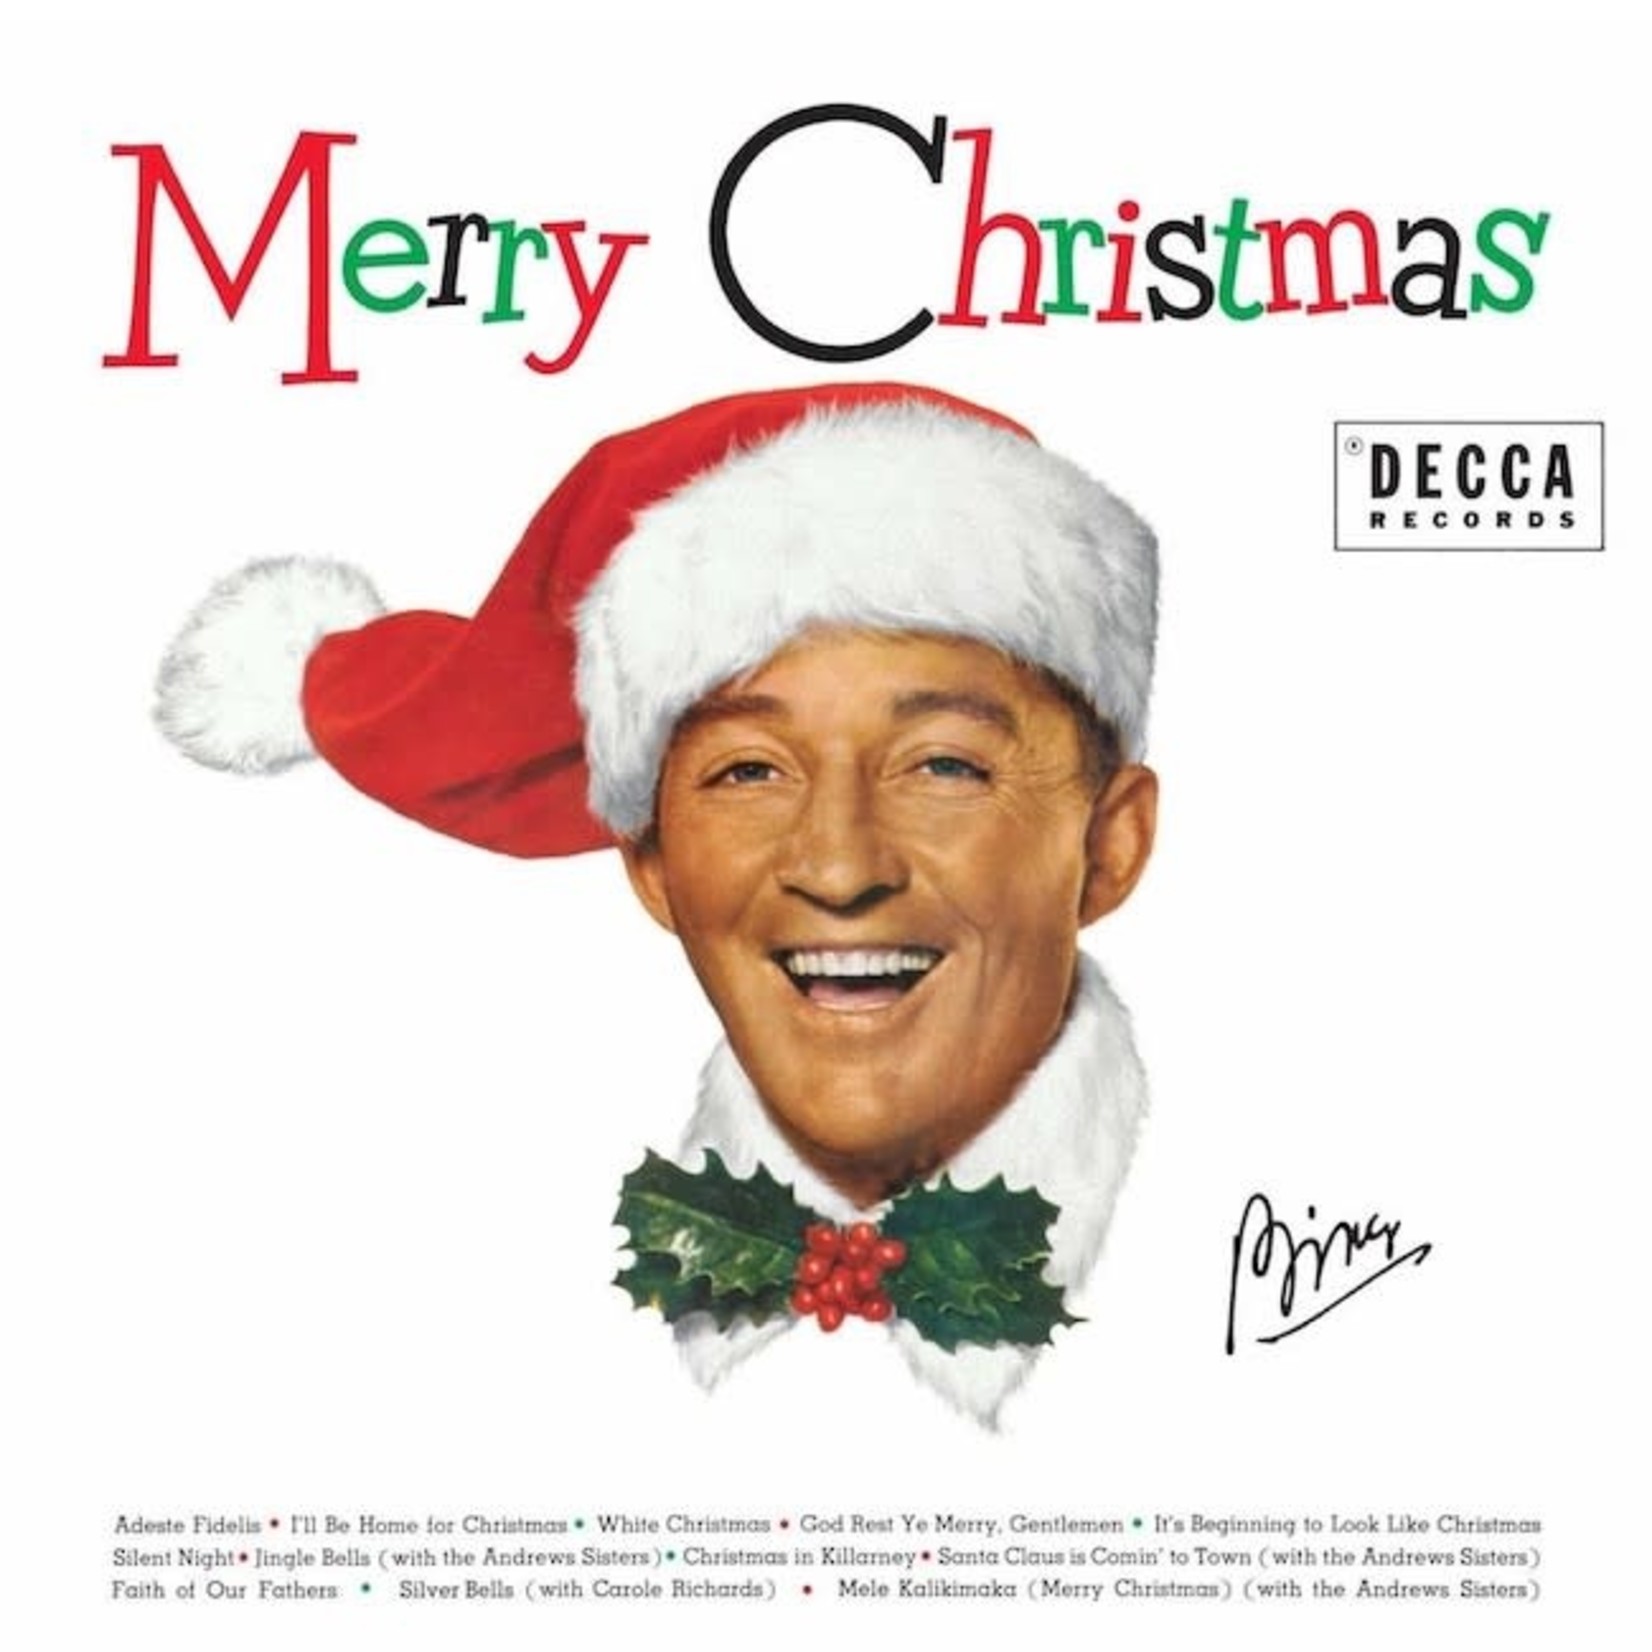 [Vintage] Bing Crosby - Merry Christmas